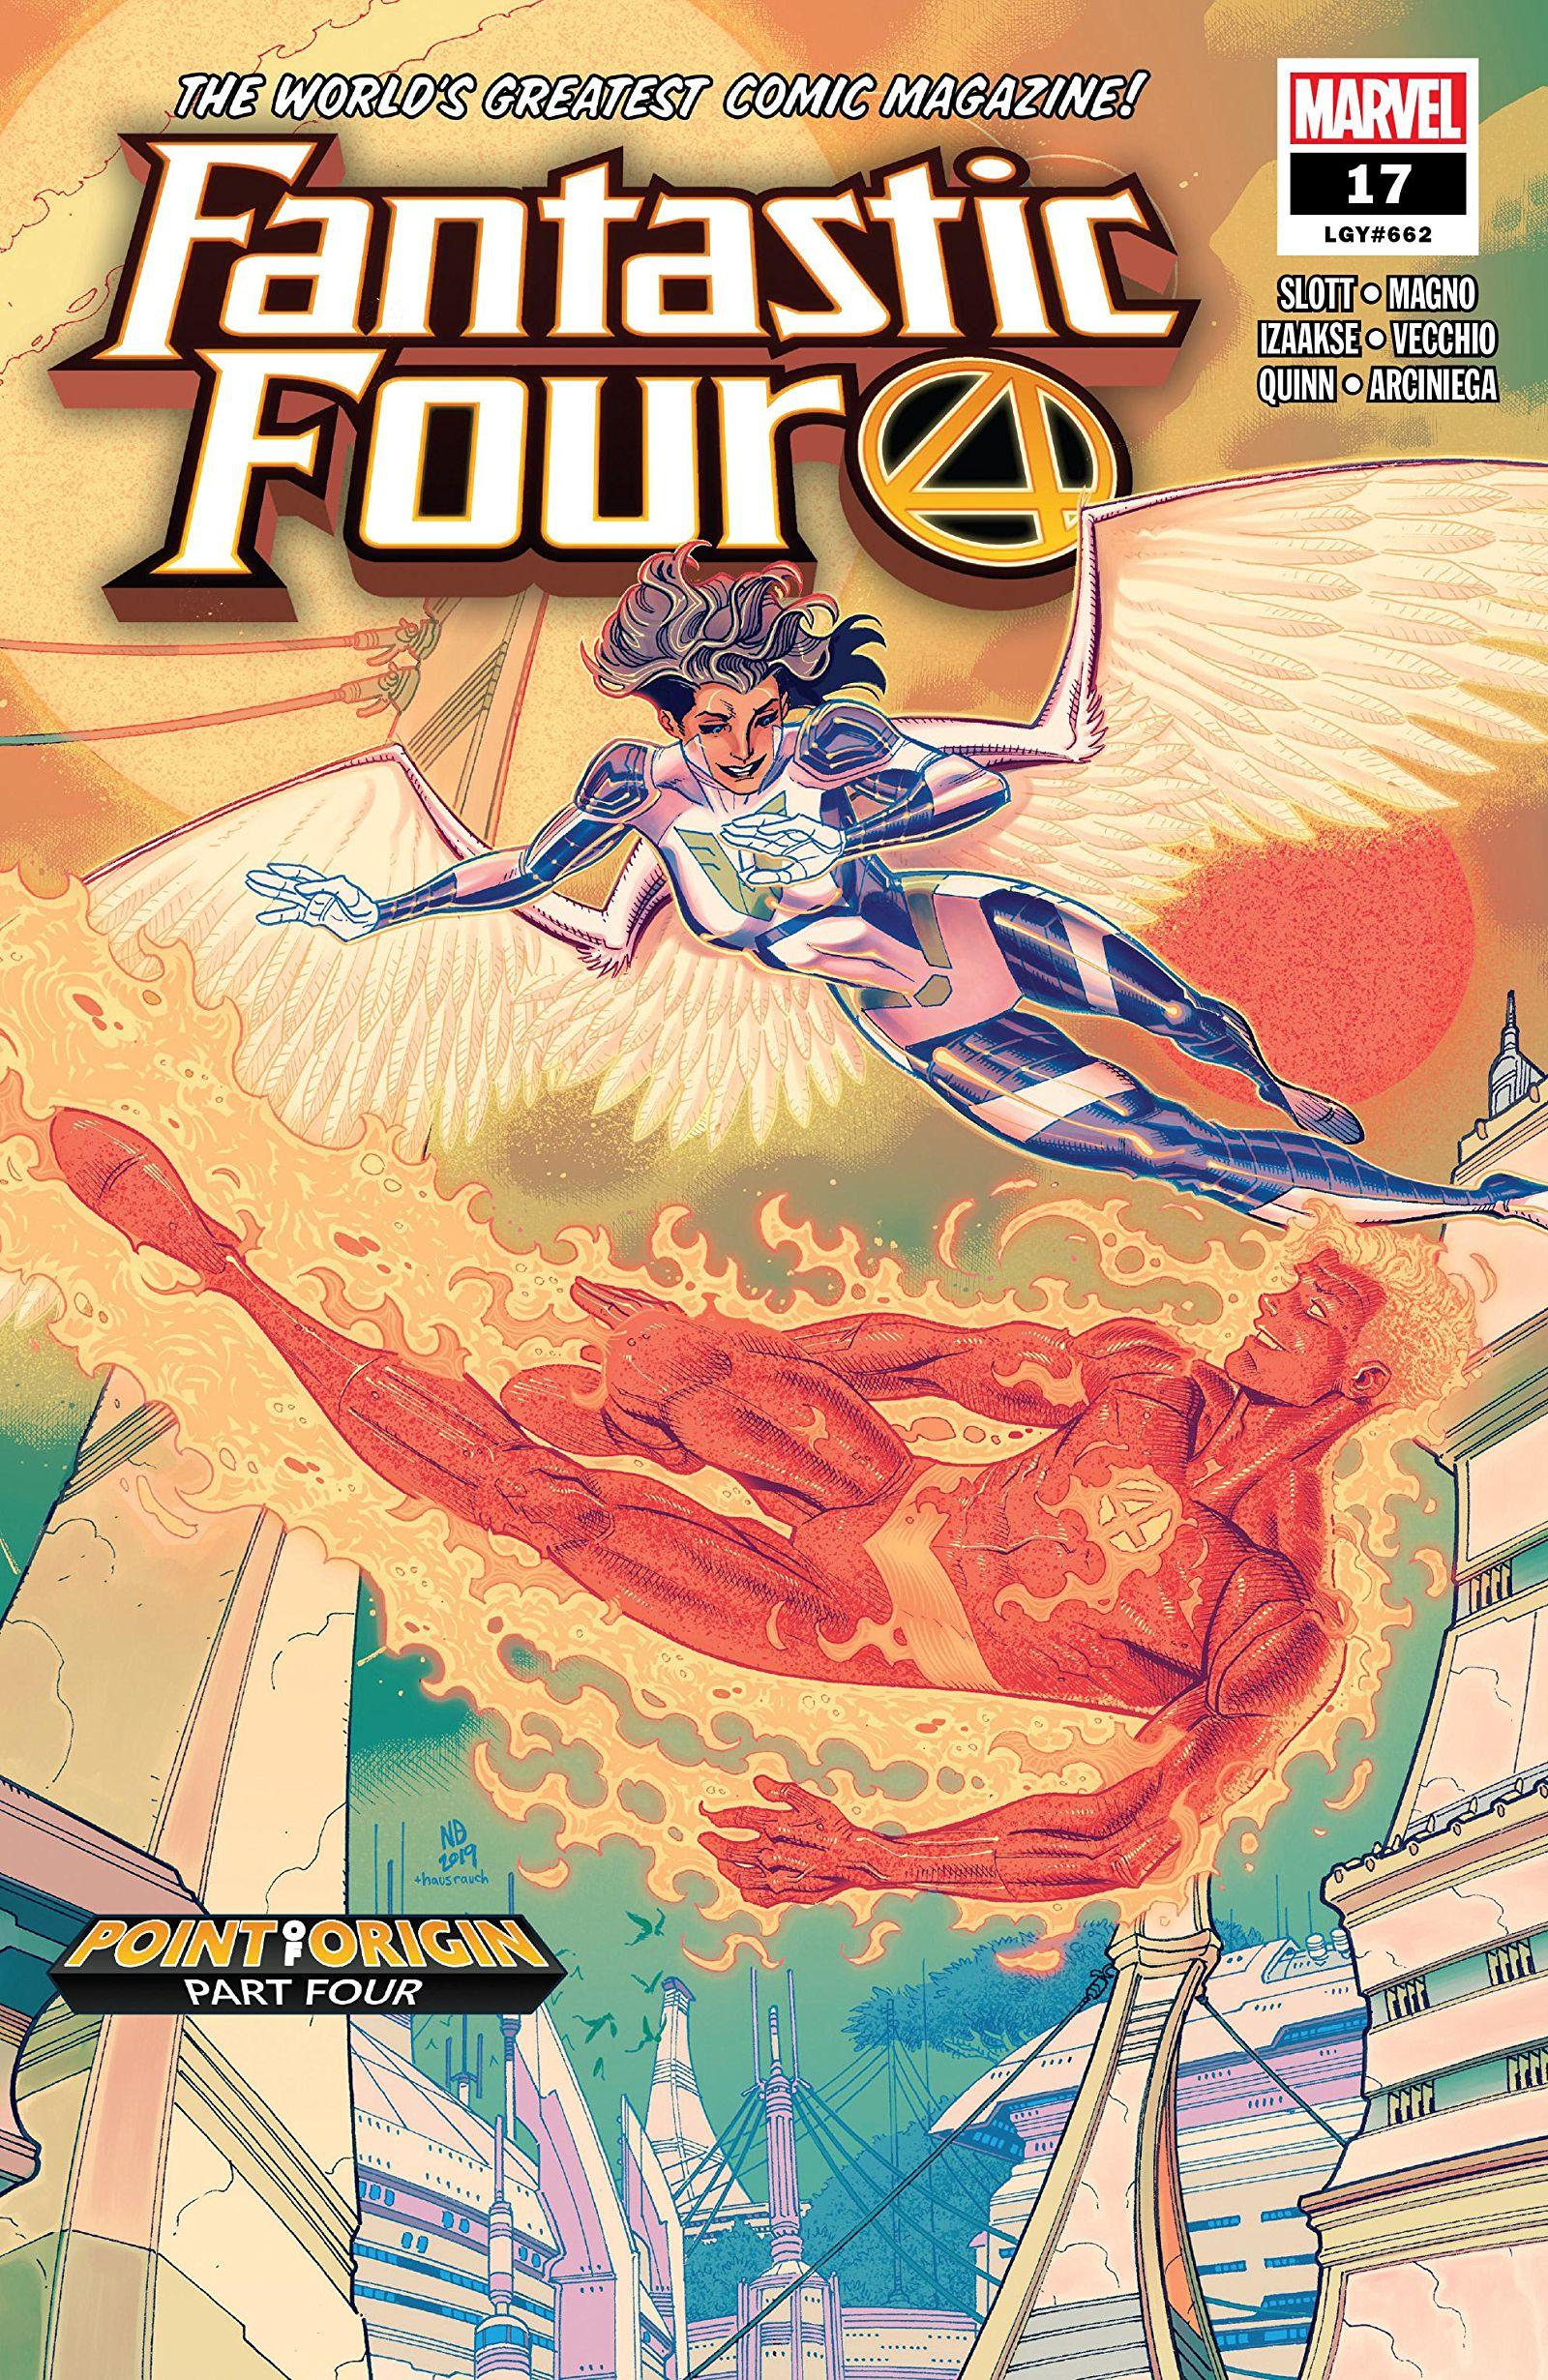 Fantastic Four Vol. 6 #17